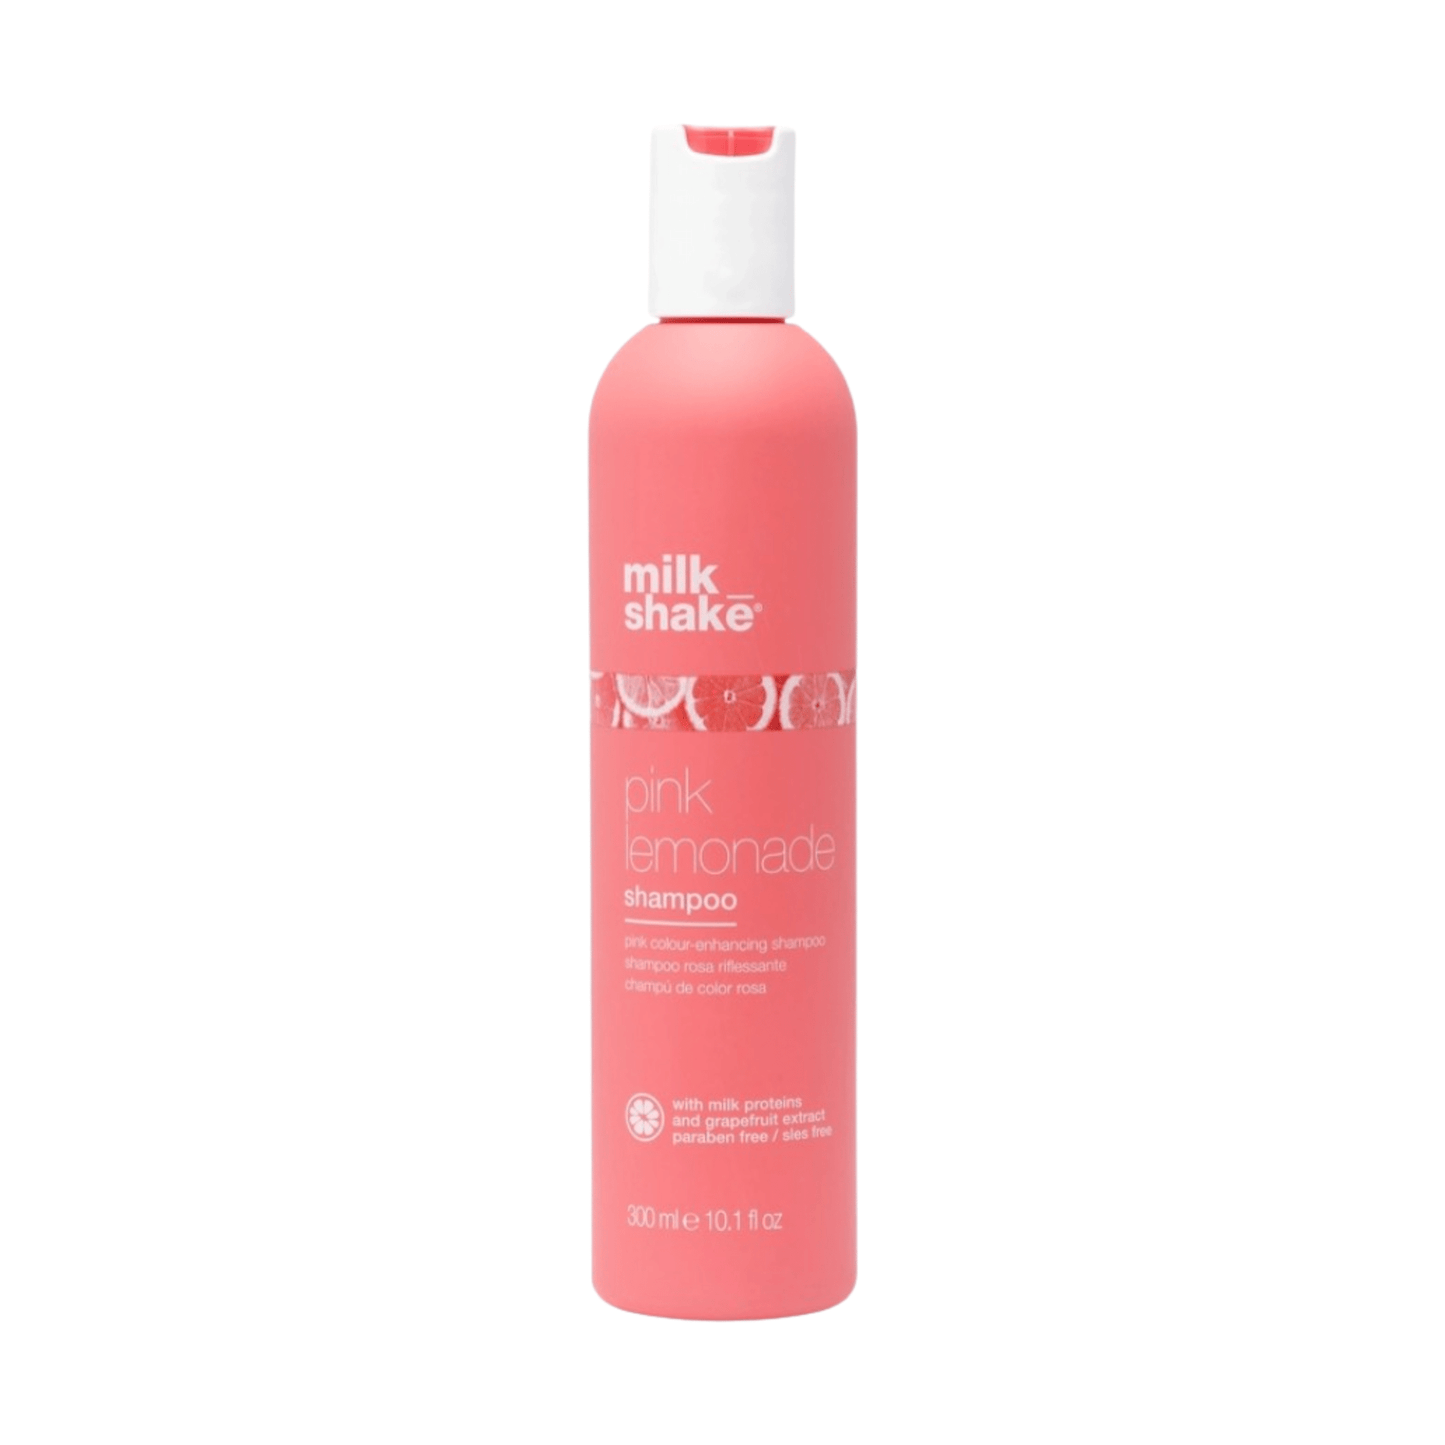 Milkshake - Pink lemonade shampoo 300 ml - Merle og Wilde